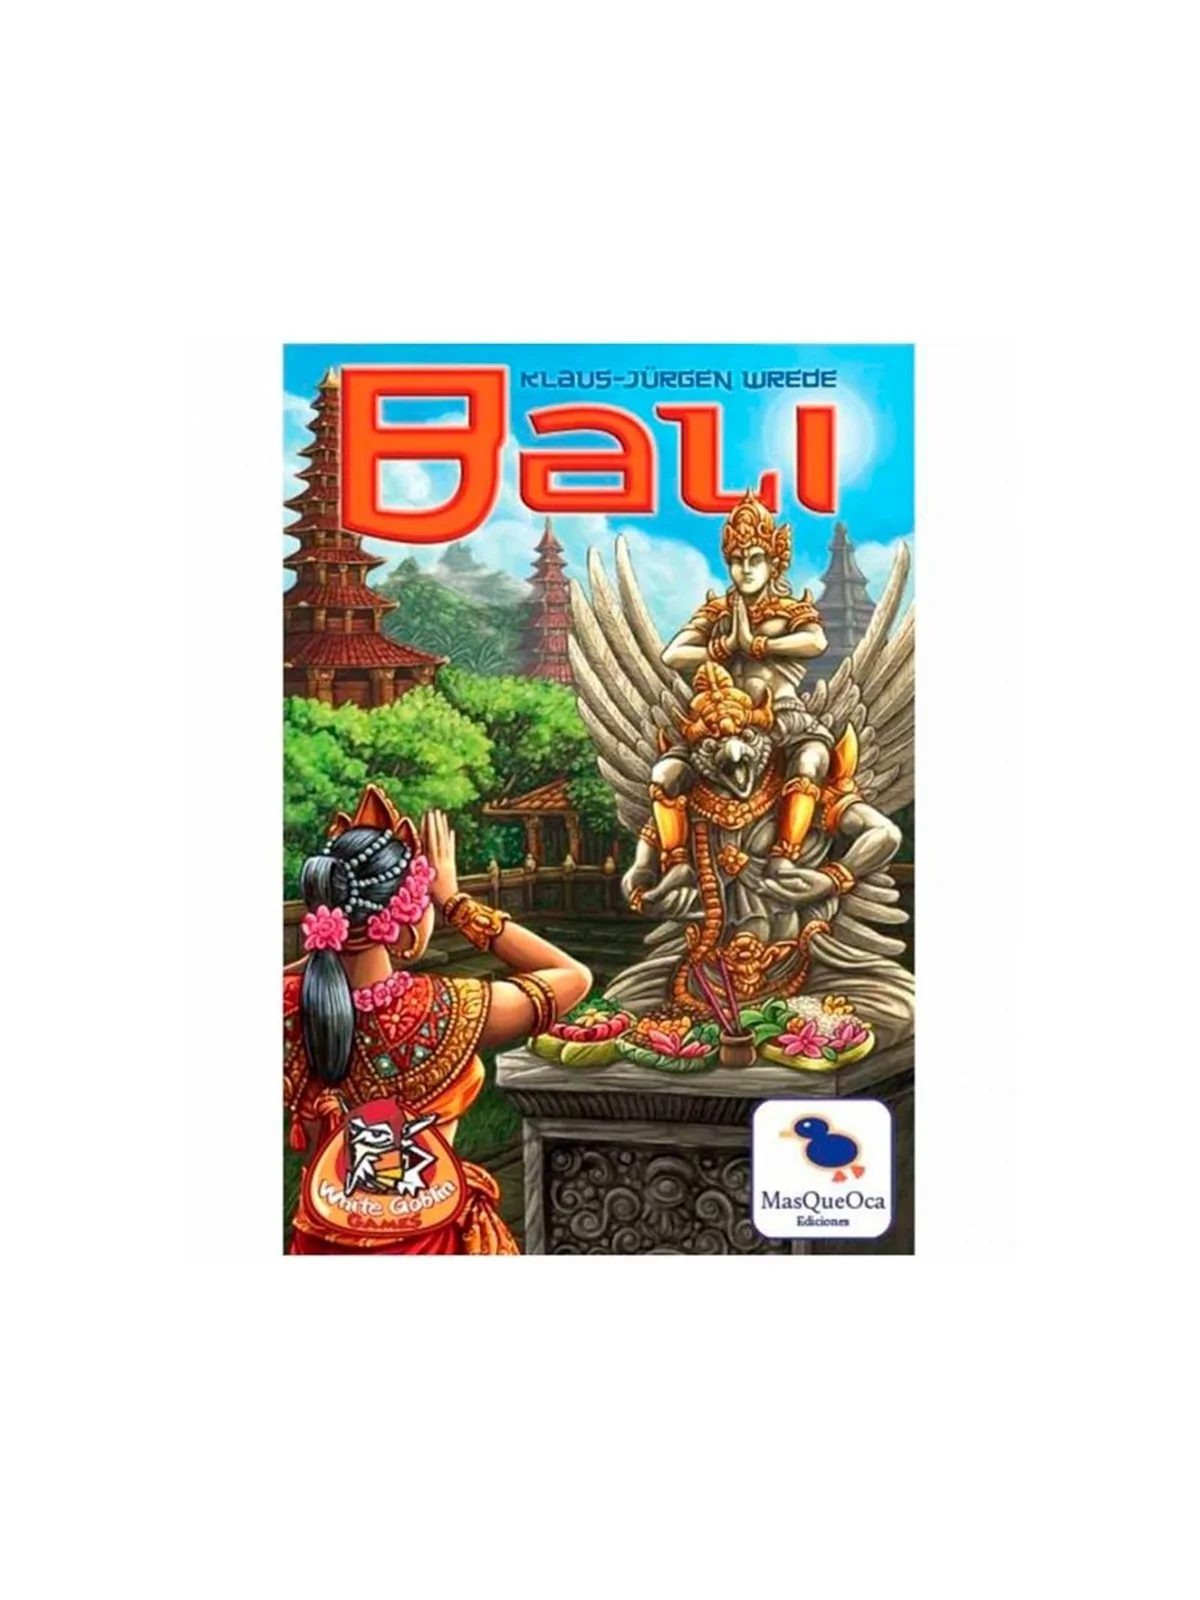 Comprar Bali barato al mejor precio 25,16 € de MasQueOca